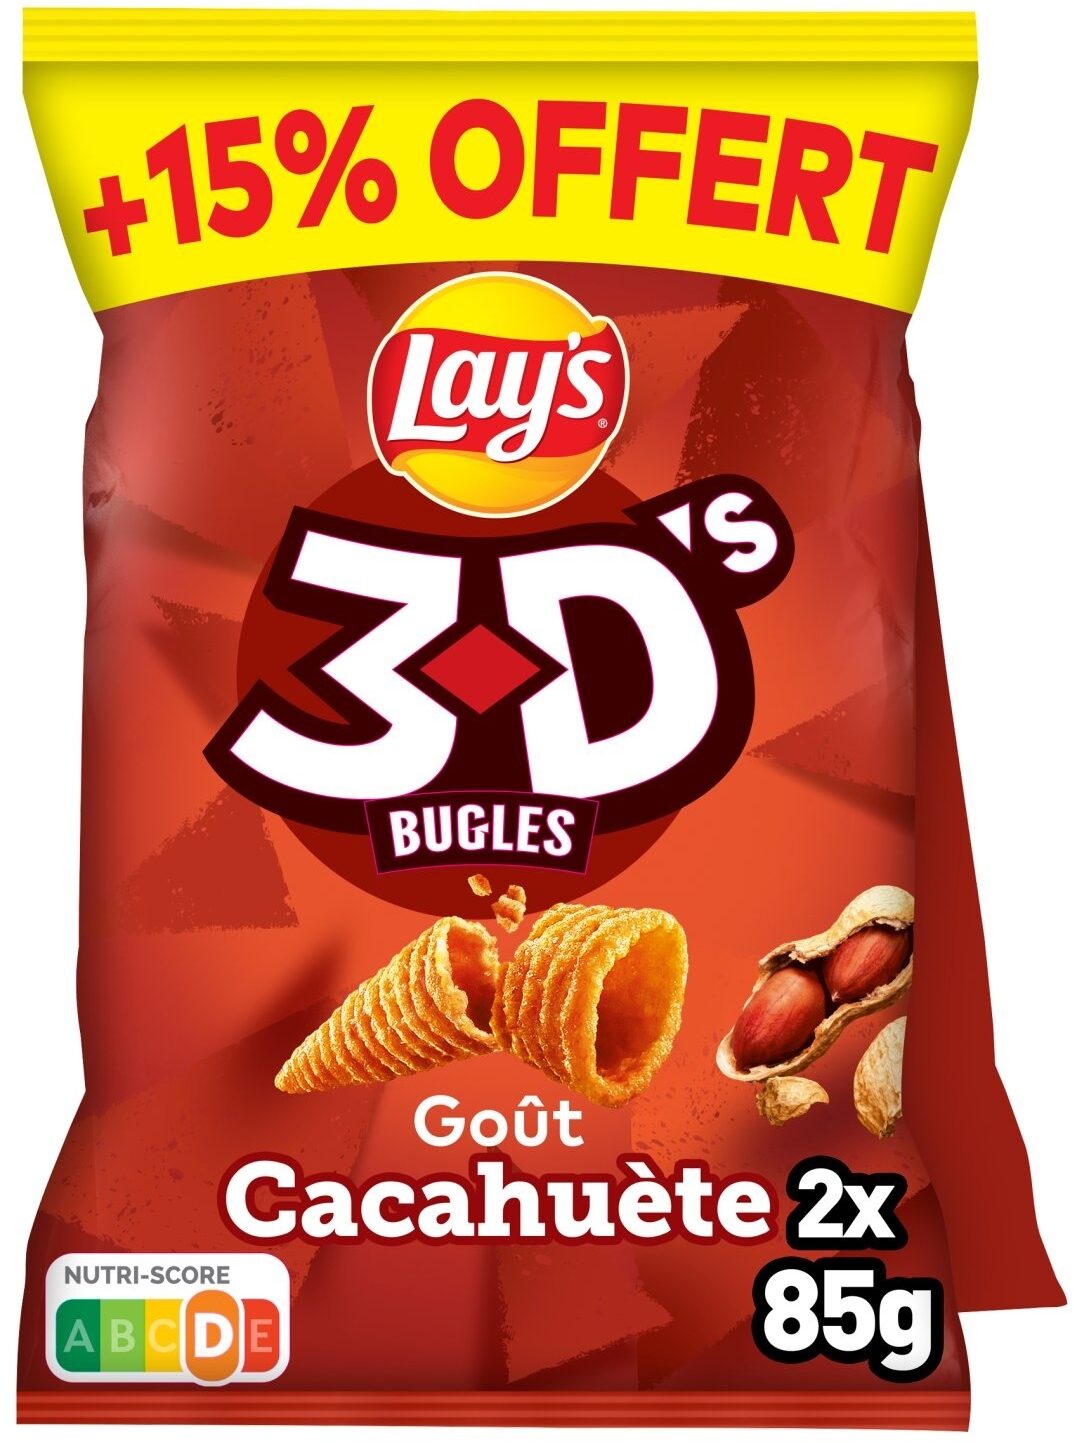 Lay's 3D's Bugles goût cacahuète 2 x 85 g + 15% offert - Product - fr